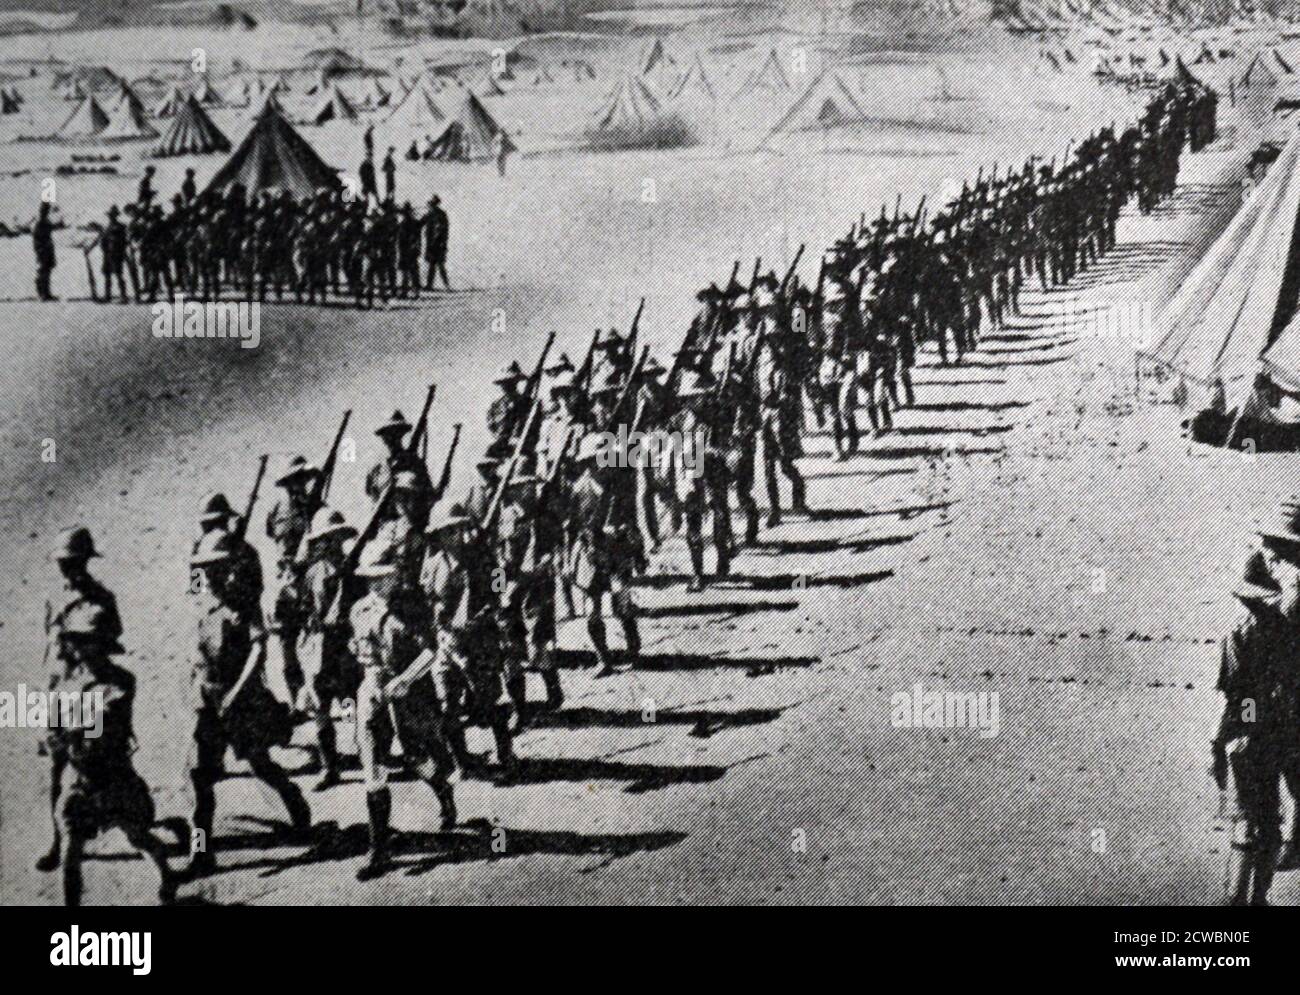 Schwarz-Weiß-Fotografie des Zweiten Weltkriegs (1939-1945); der Krieg in Nordafrika. Britische Verstärkung in der Wüste außerhalb von Kairo. Stockfoto